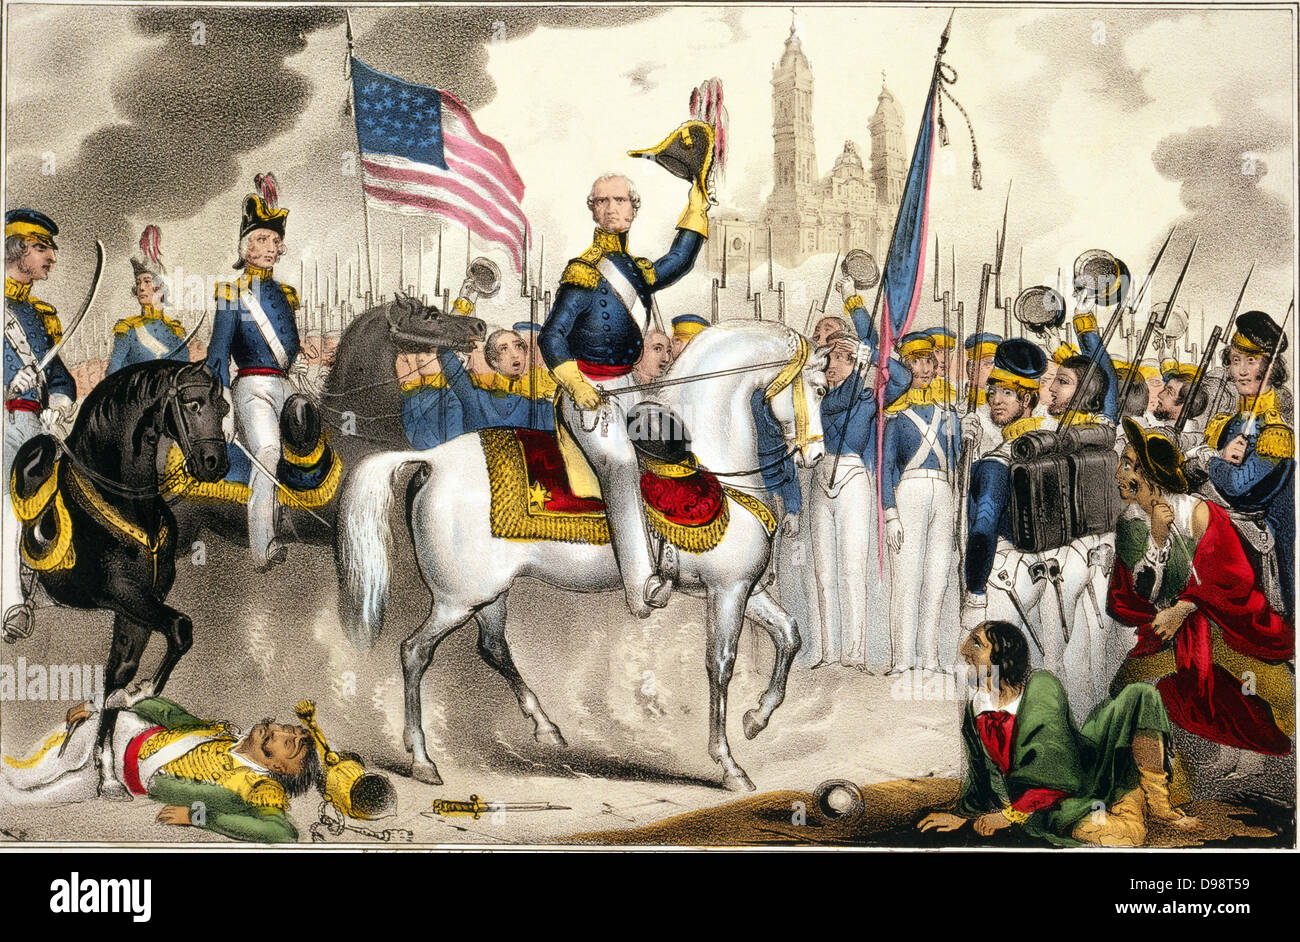 Guerre américano-mexicaine 1846-1848 : Le général Winfield Scott, commandant de l'Armée américaine du Nord, de faire une entrée triomphale dans la ville de Mexico sur un cheval blanc, 14 septembre 1847. Print c1848. Les étoiles du drapeau-et-Stripes Mexique Banque D'Images